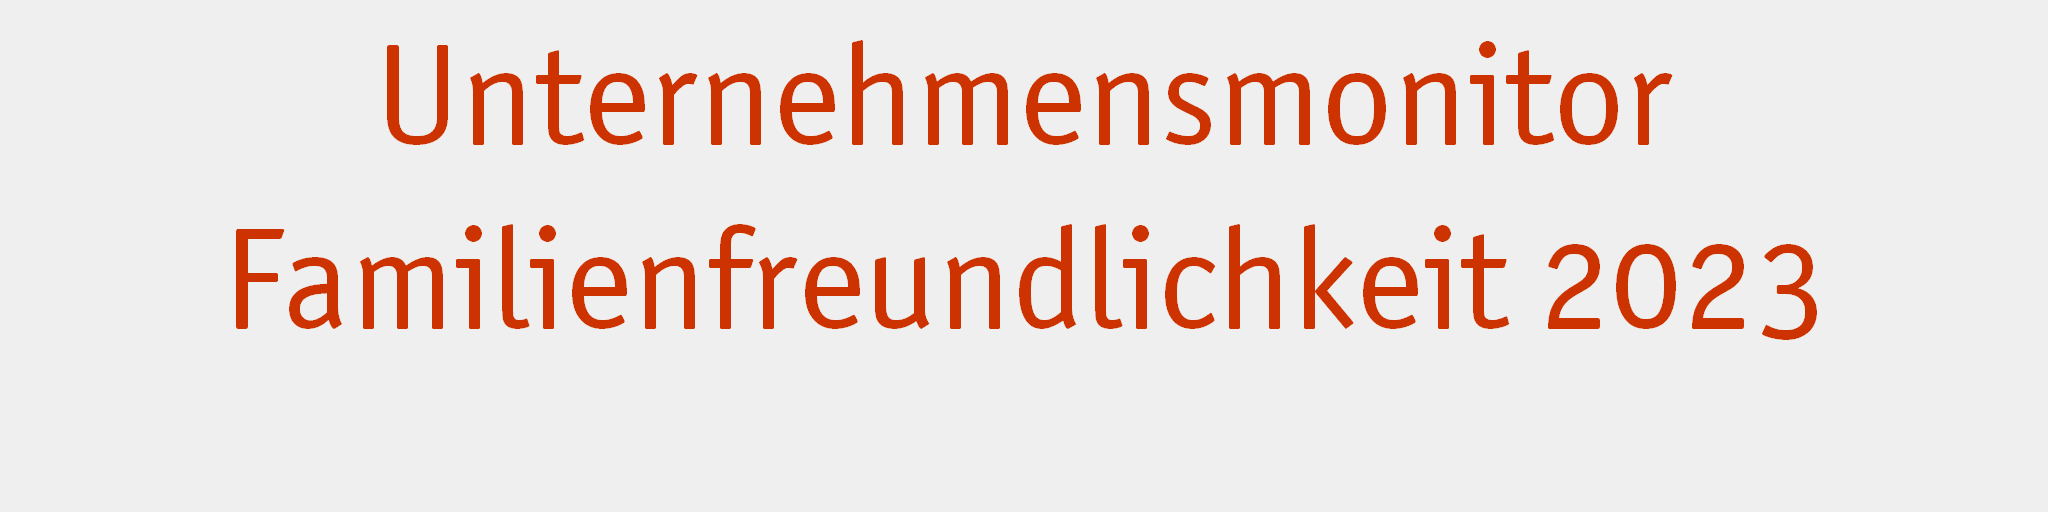 Familienfreundlichkeit in deutschen Betrieben - Unternehmensmonitor Familienfreundlichkeit 2023